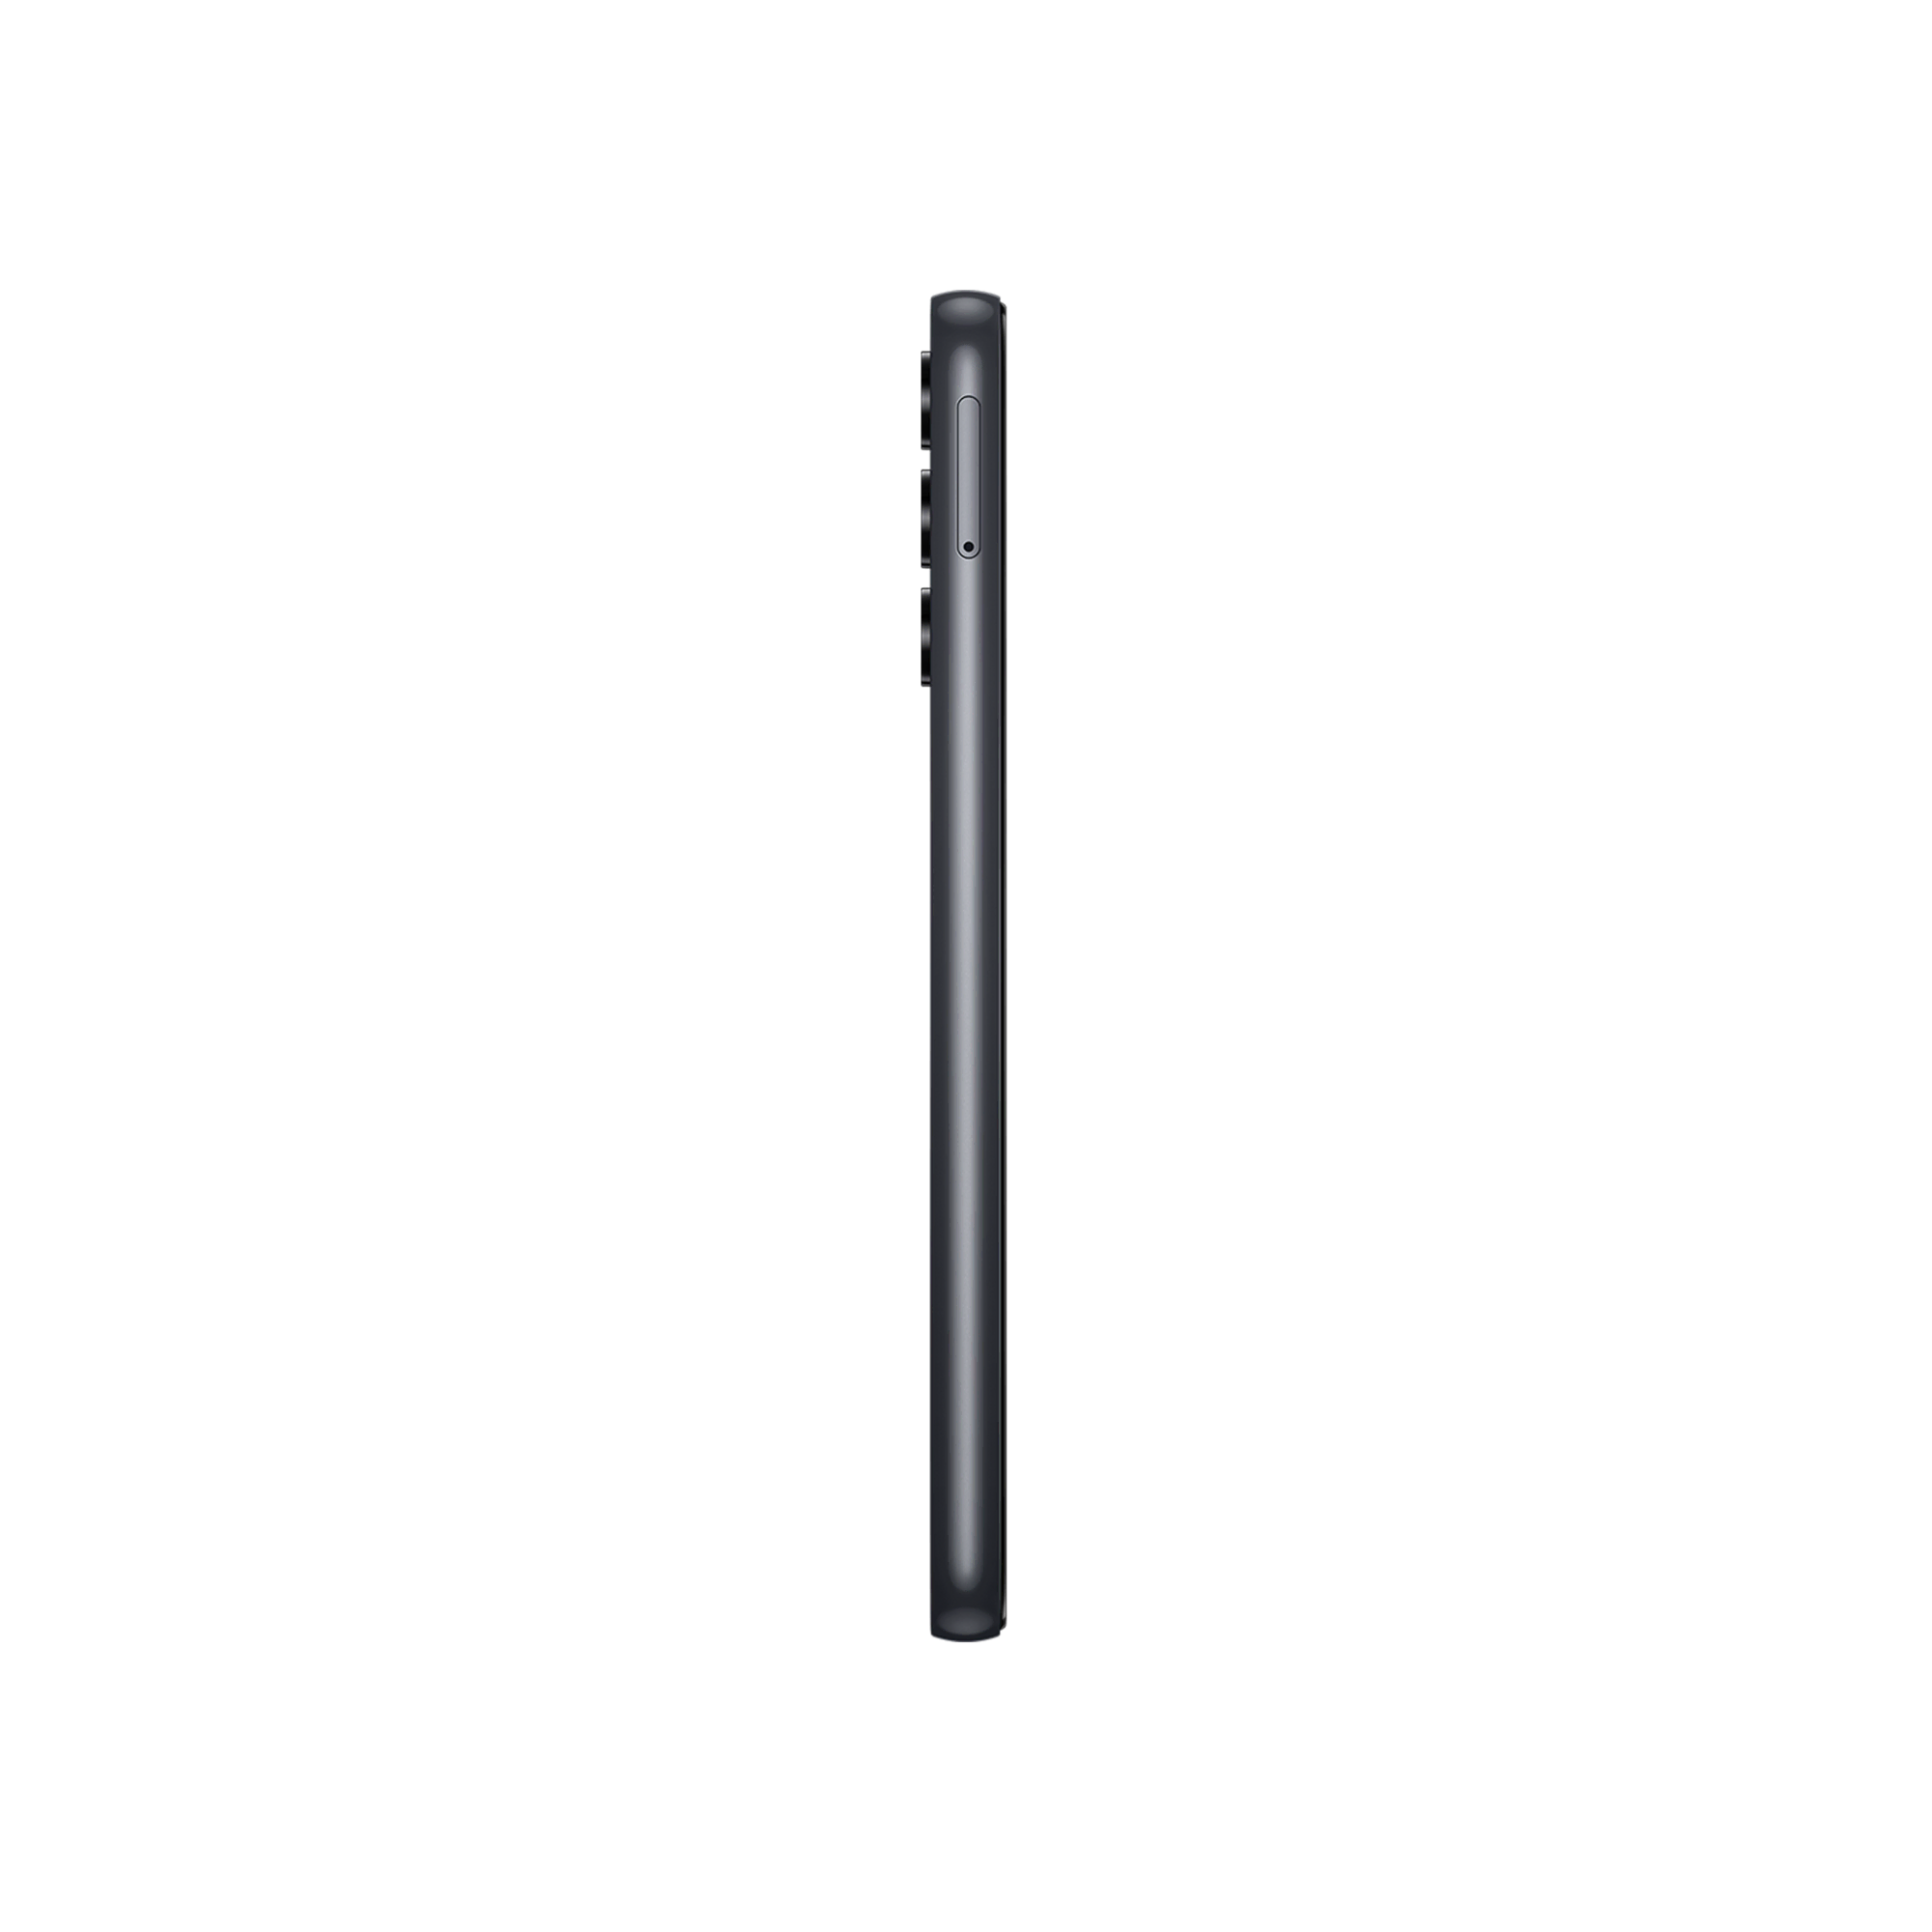 SAMSUNG Galaxy A14 4GB/128GB Siyah Android Telefon Modelleri